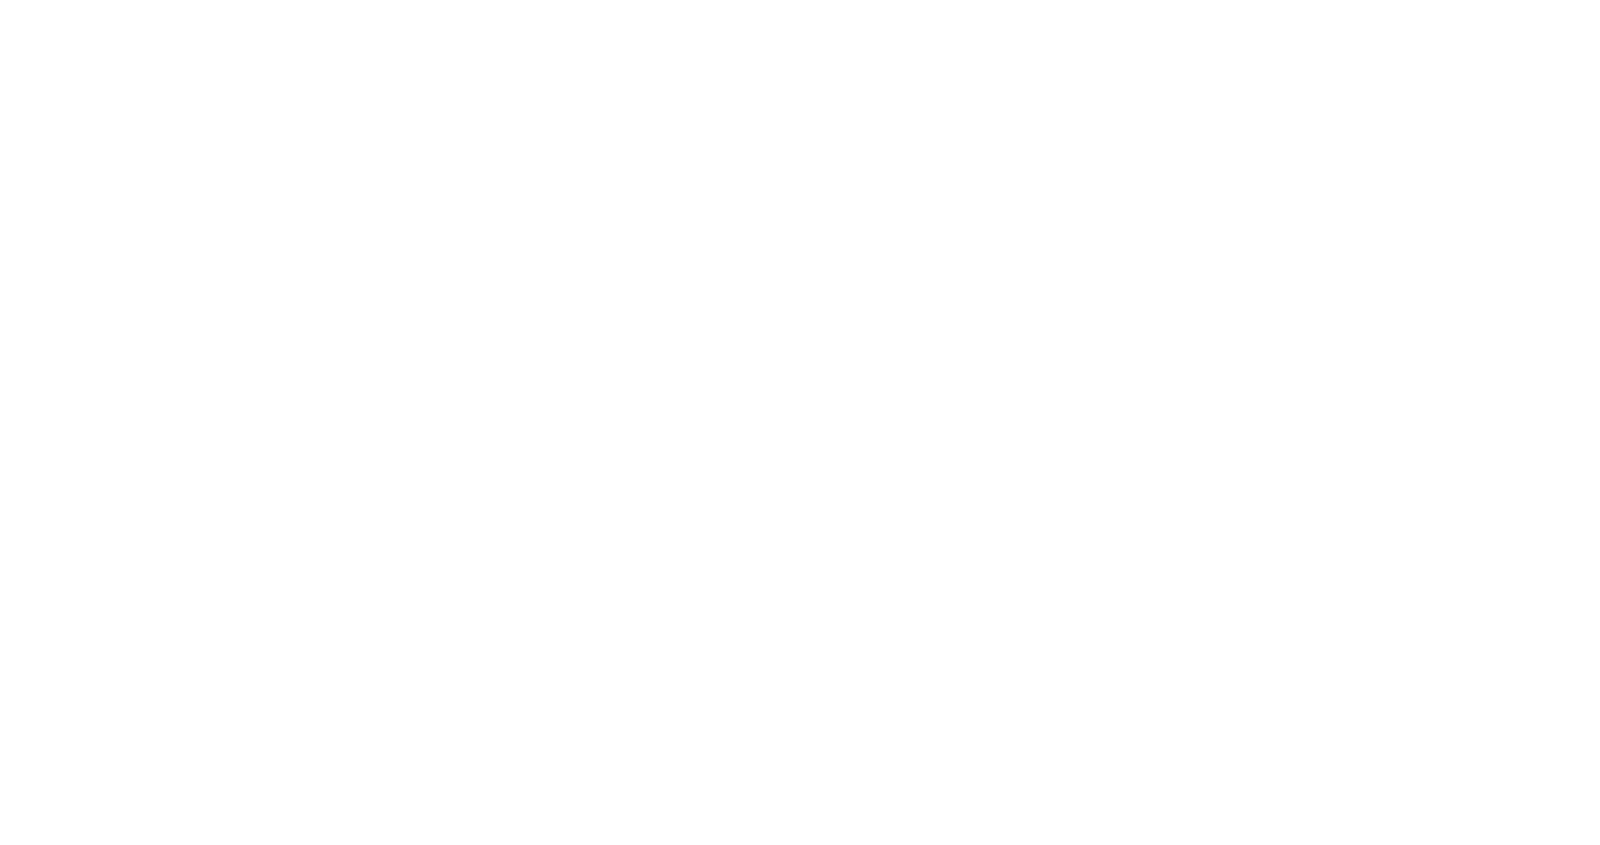 Circuit zolder logo Truckshow